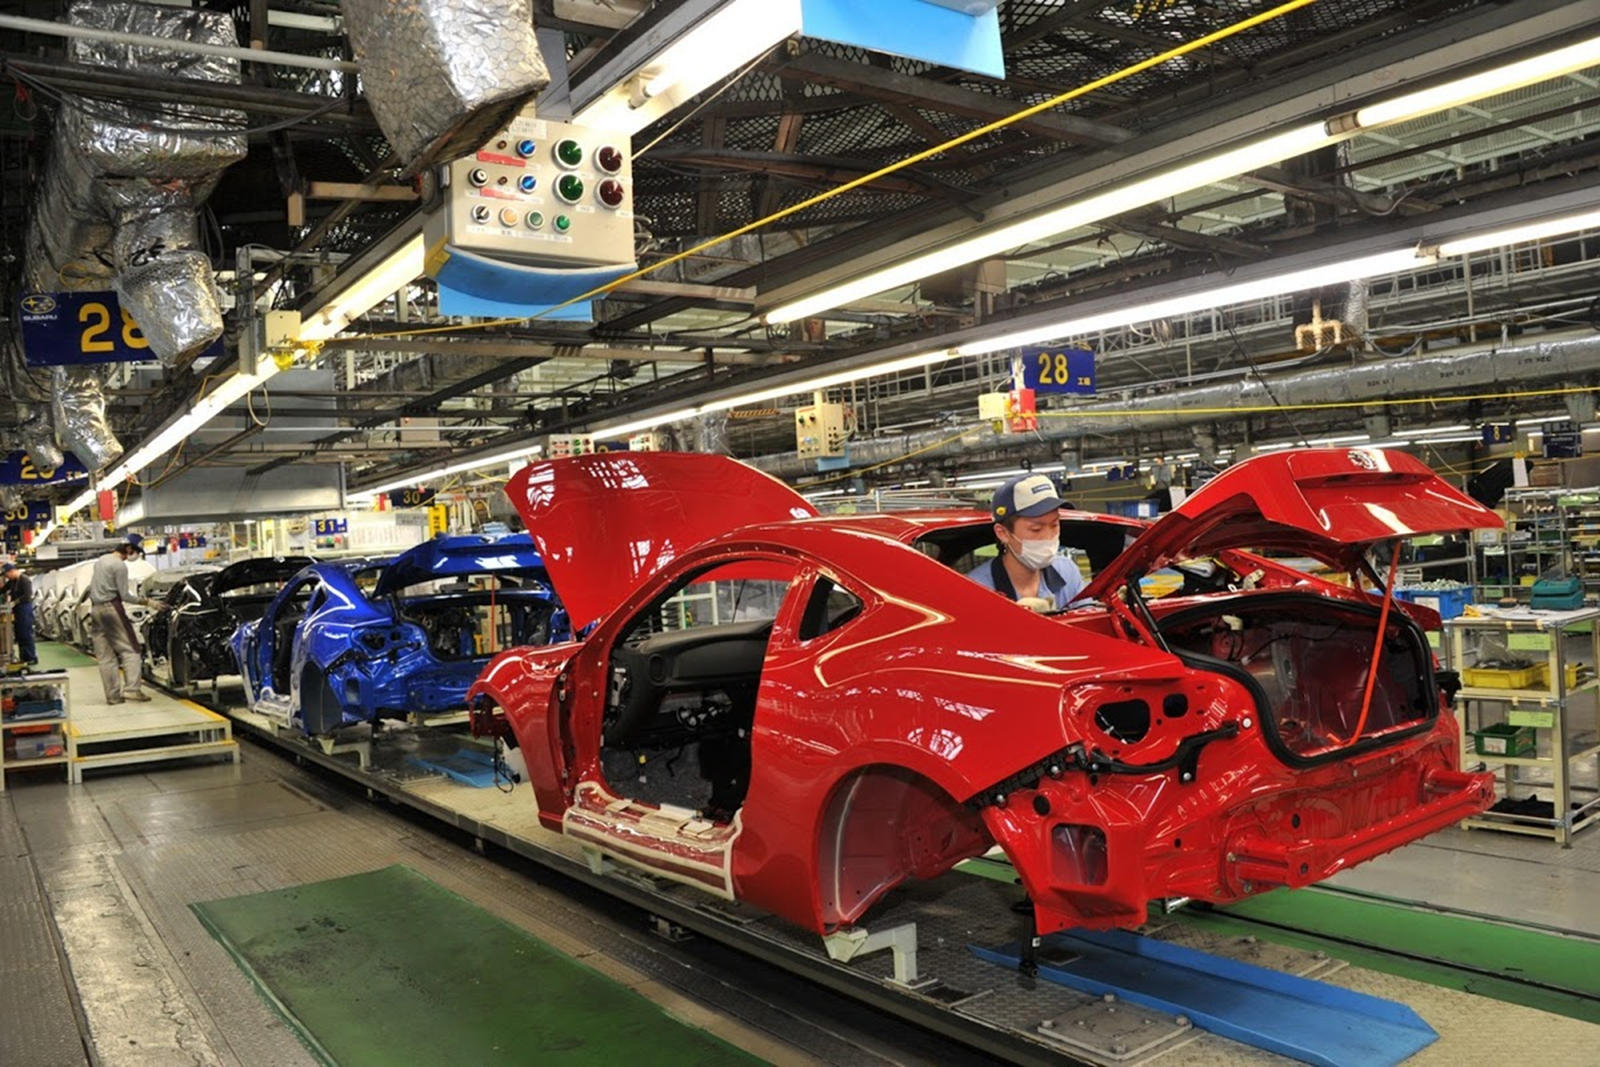 Thiếu linh kiện từ Trung Quốc, ngành công nghiệp xe hơi Nhật Bản tìm cách khắc phục